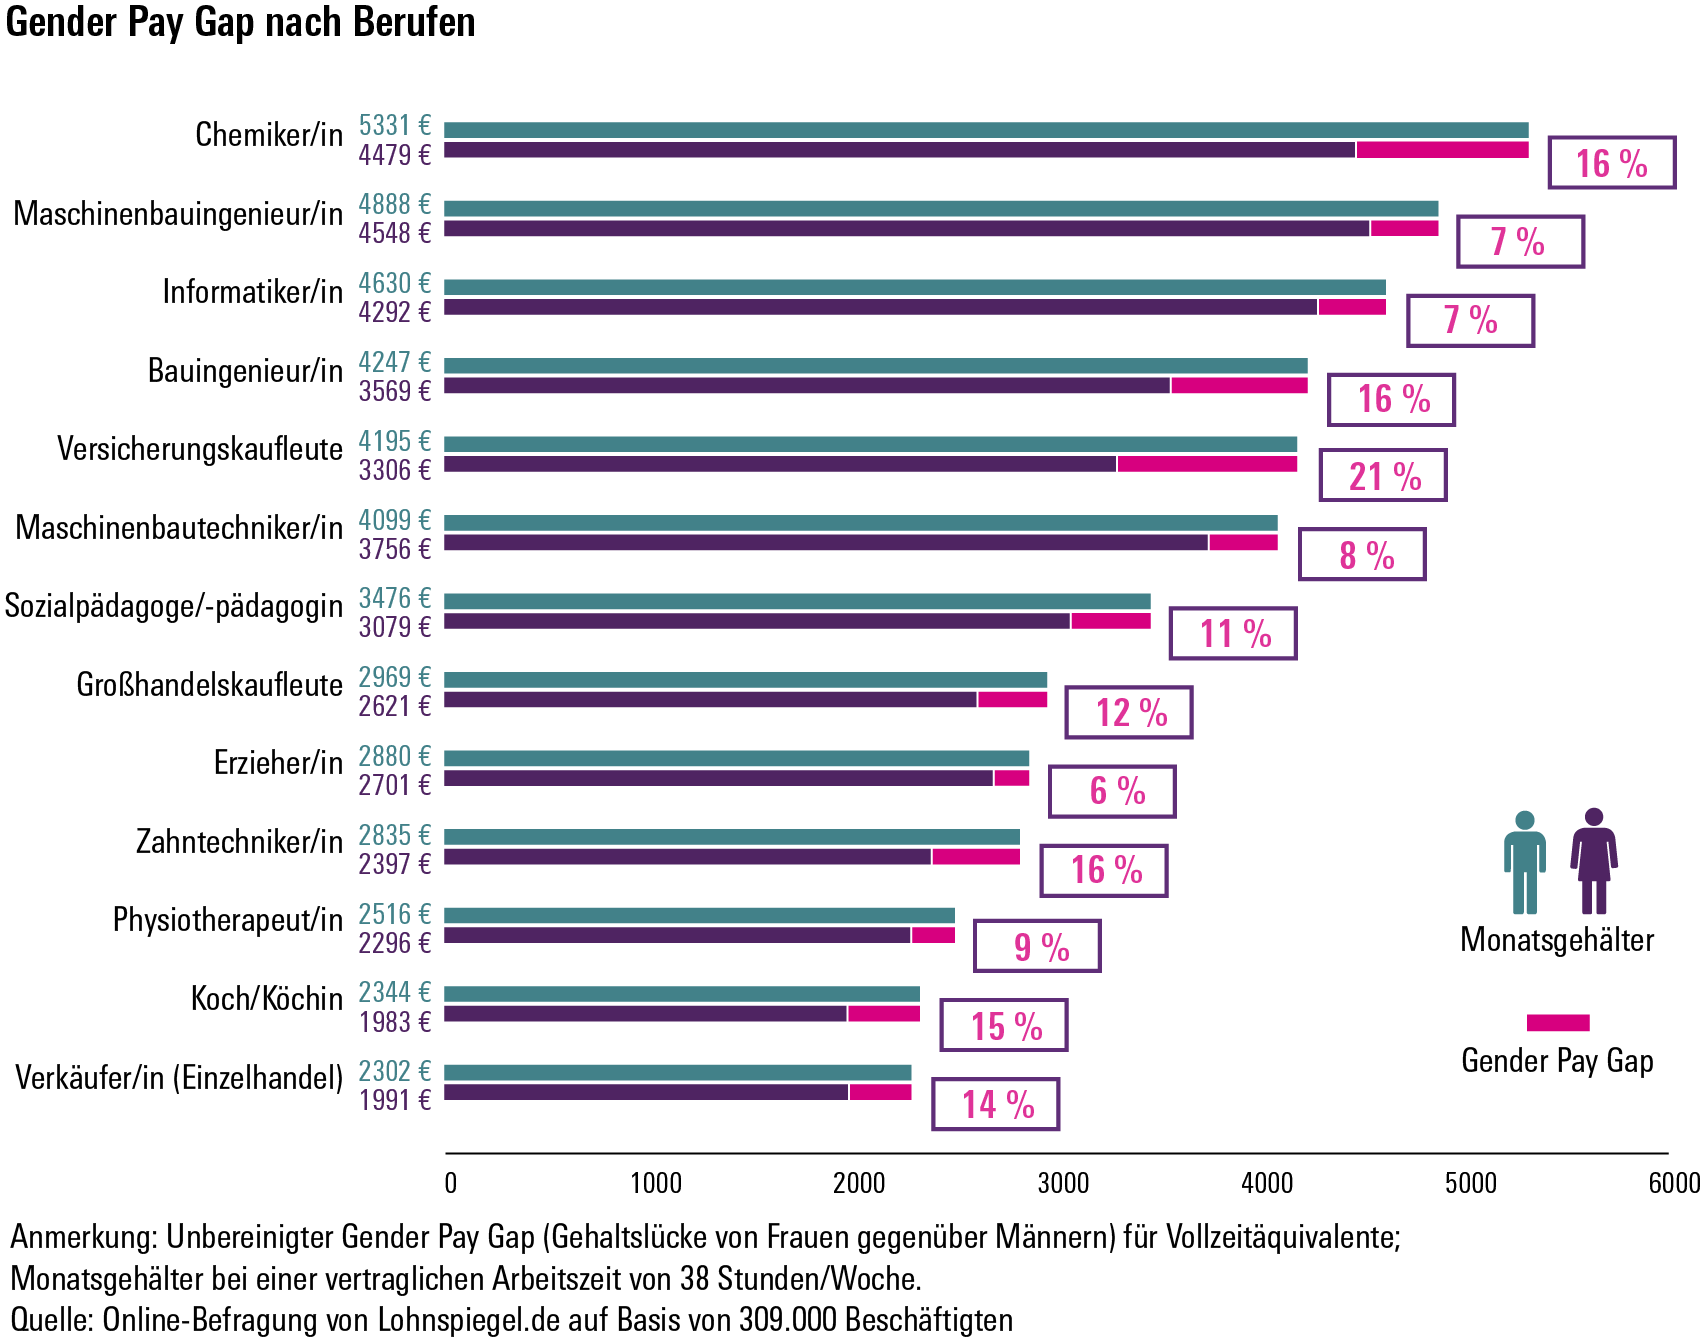 Gehaltsutnerschiede zwischen Frauen und Männern in verschiedenen Branchen (Bild: WSI)